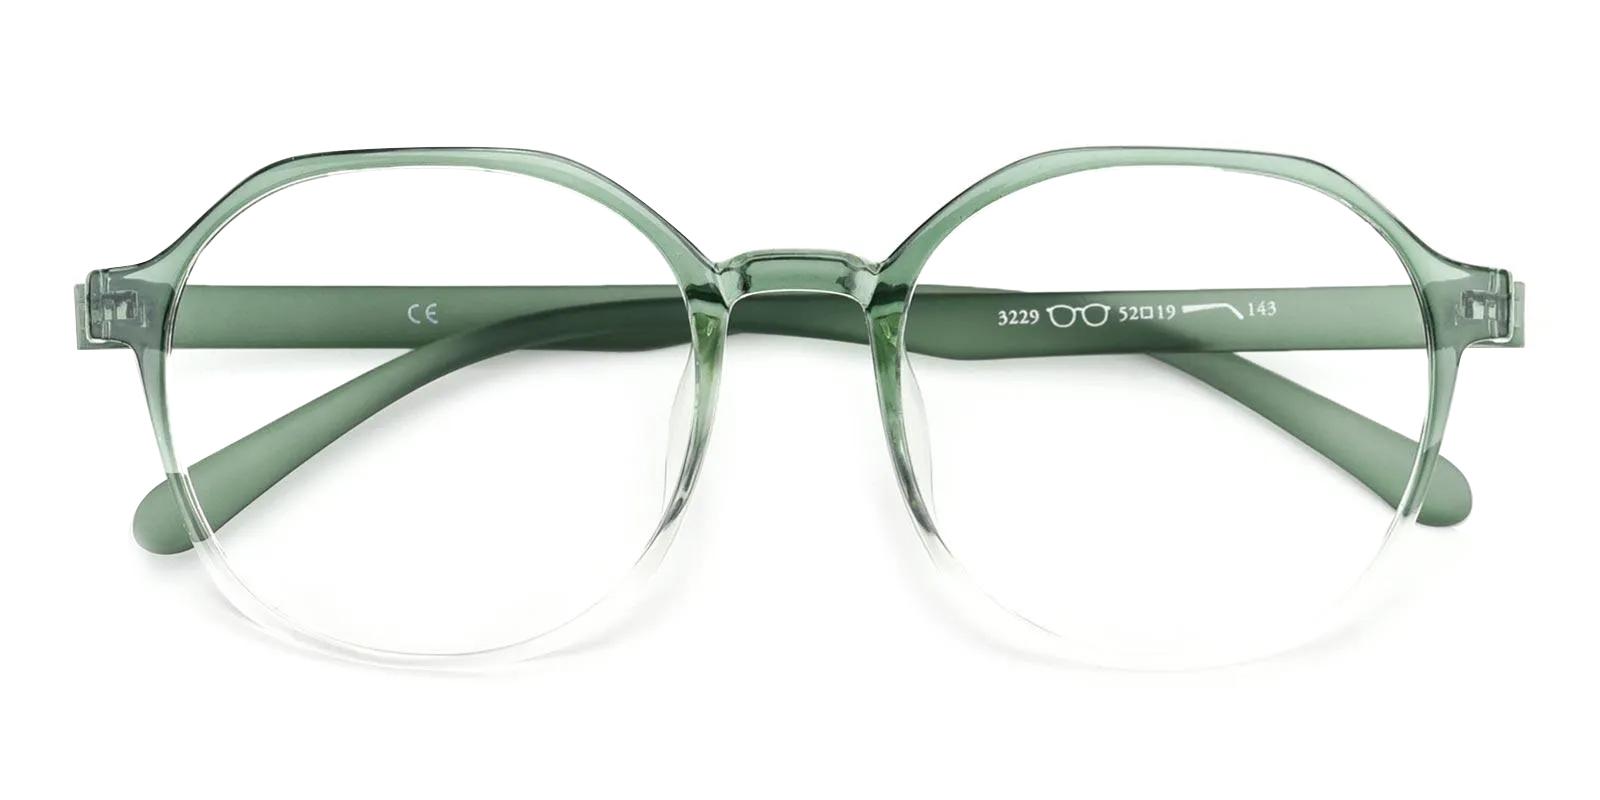 Teret Green TR Eyeglasses , UniversalBridgeFit Frames from ABBE Glasses